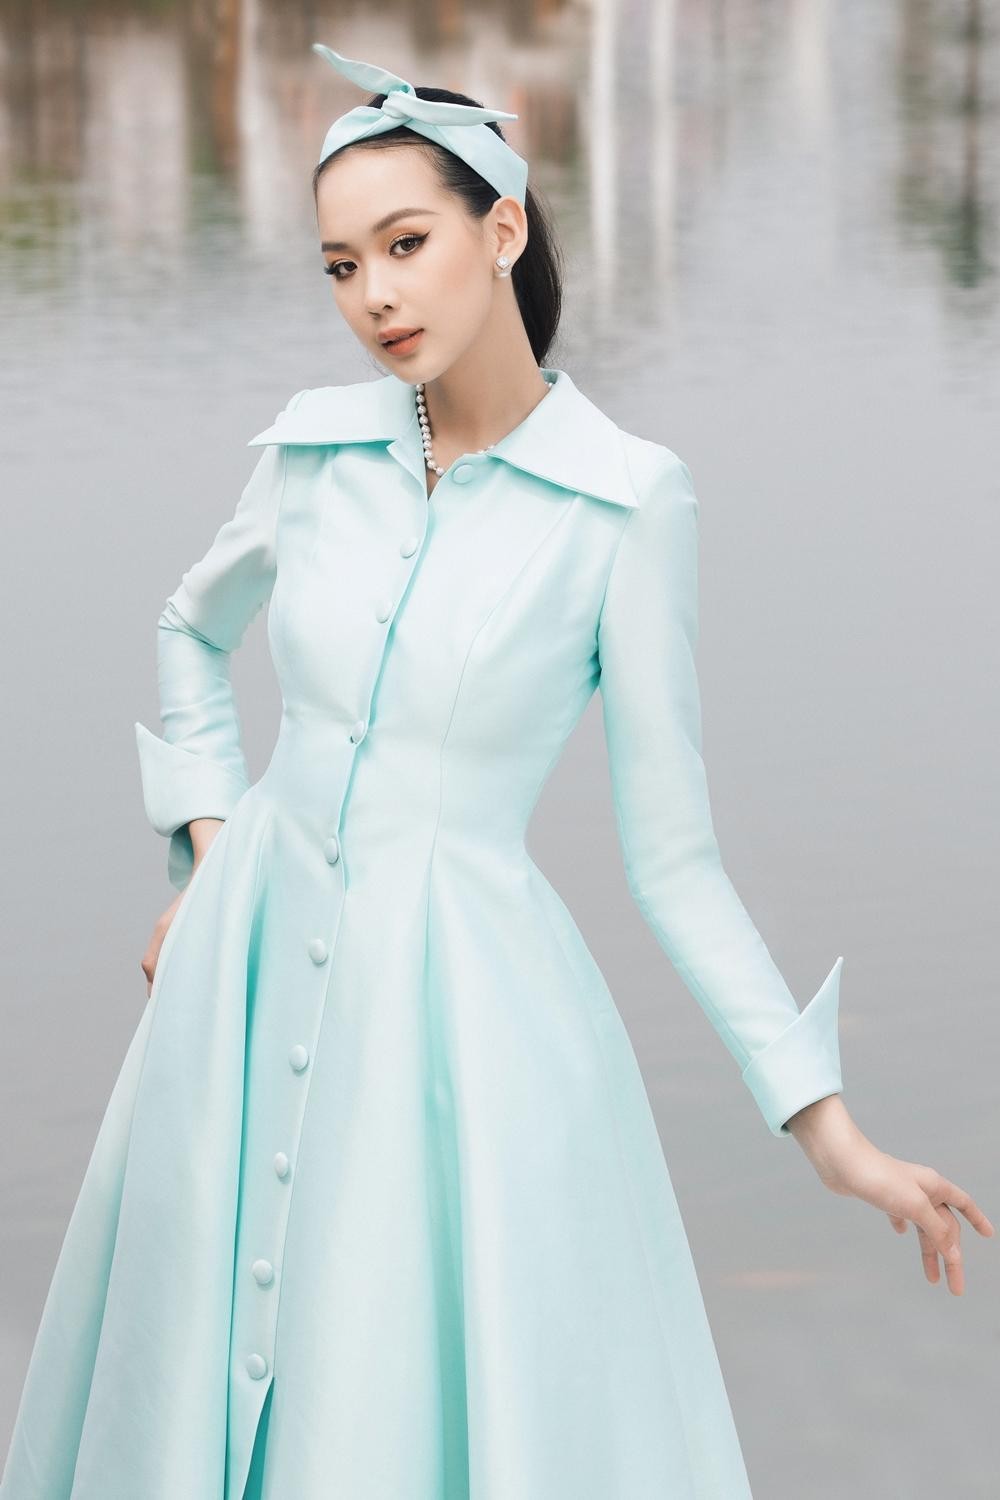 Hoa hậu Lương Thùy Linh bỗng "trở nên nhỏ bé" bên thí sinh cao nhất Miss World Vietnam 2022 ảnh 4